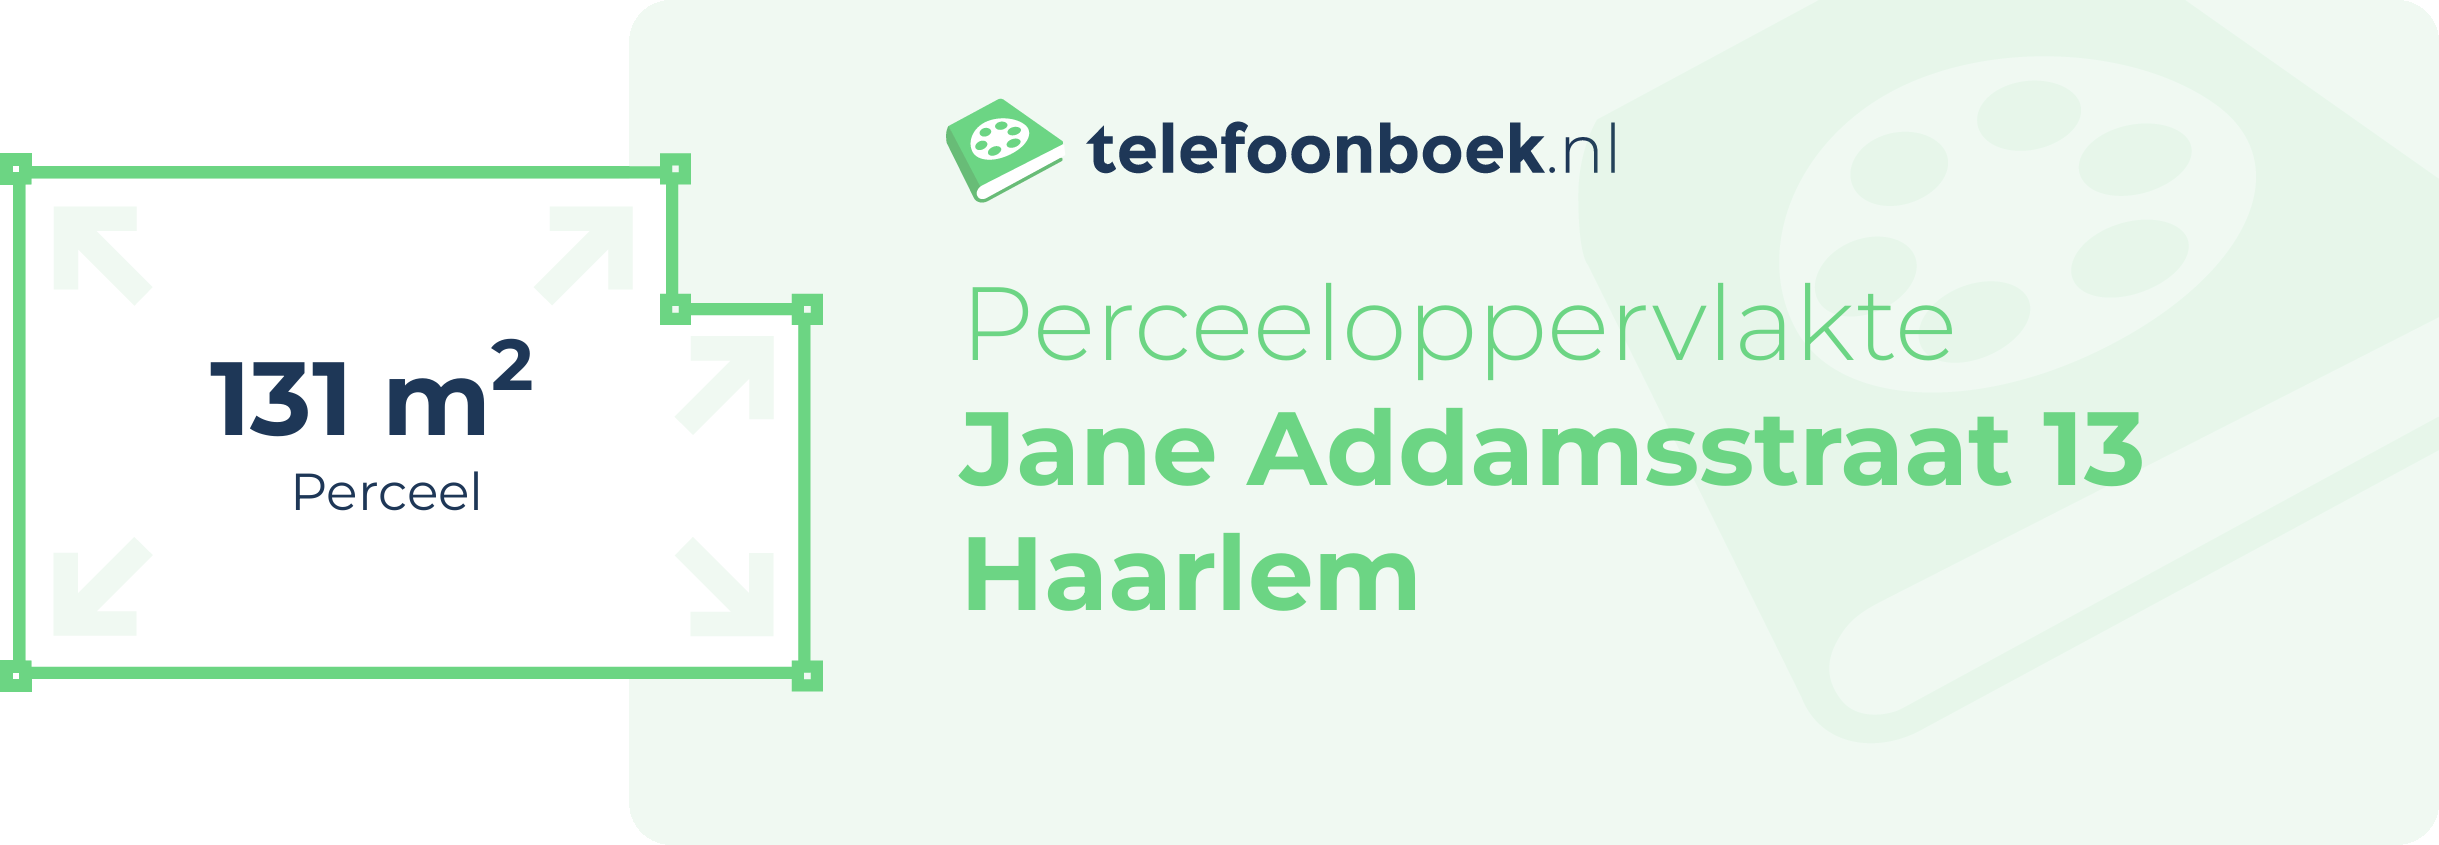 Perceeloppervlakte Jane Addamsstraat 13 Haarlem